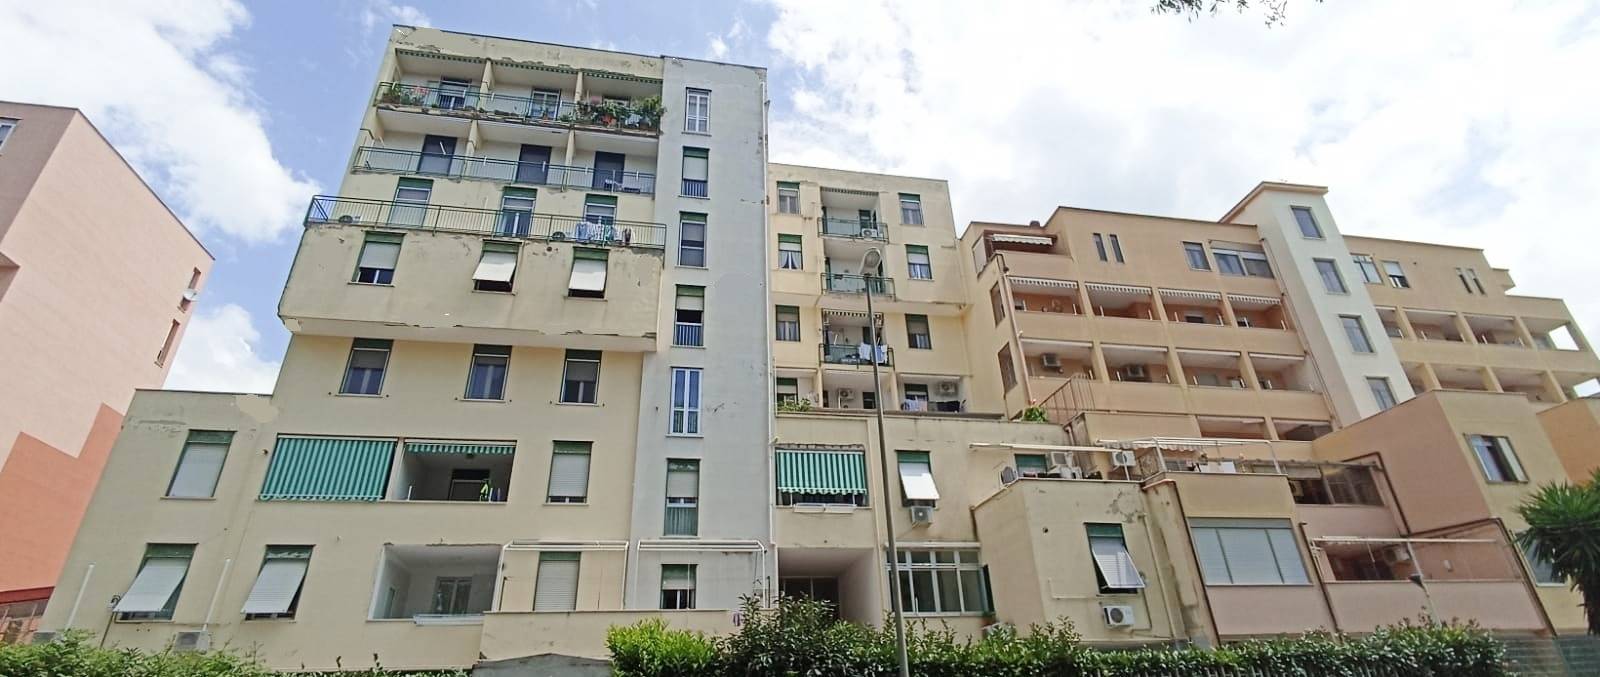 Appartamento in vendita a Salerno, 4 locali, zona atello, prezzo € 330.000 | PortaleAgenzieImmobiliari.it